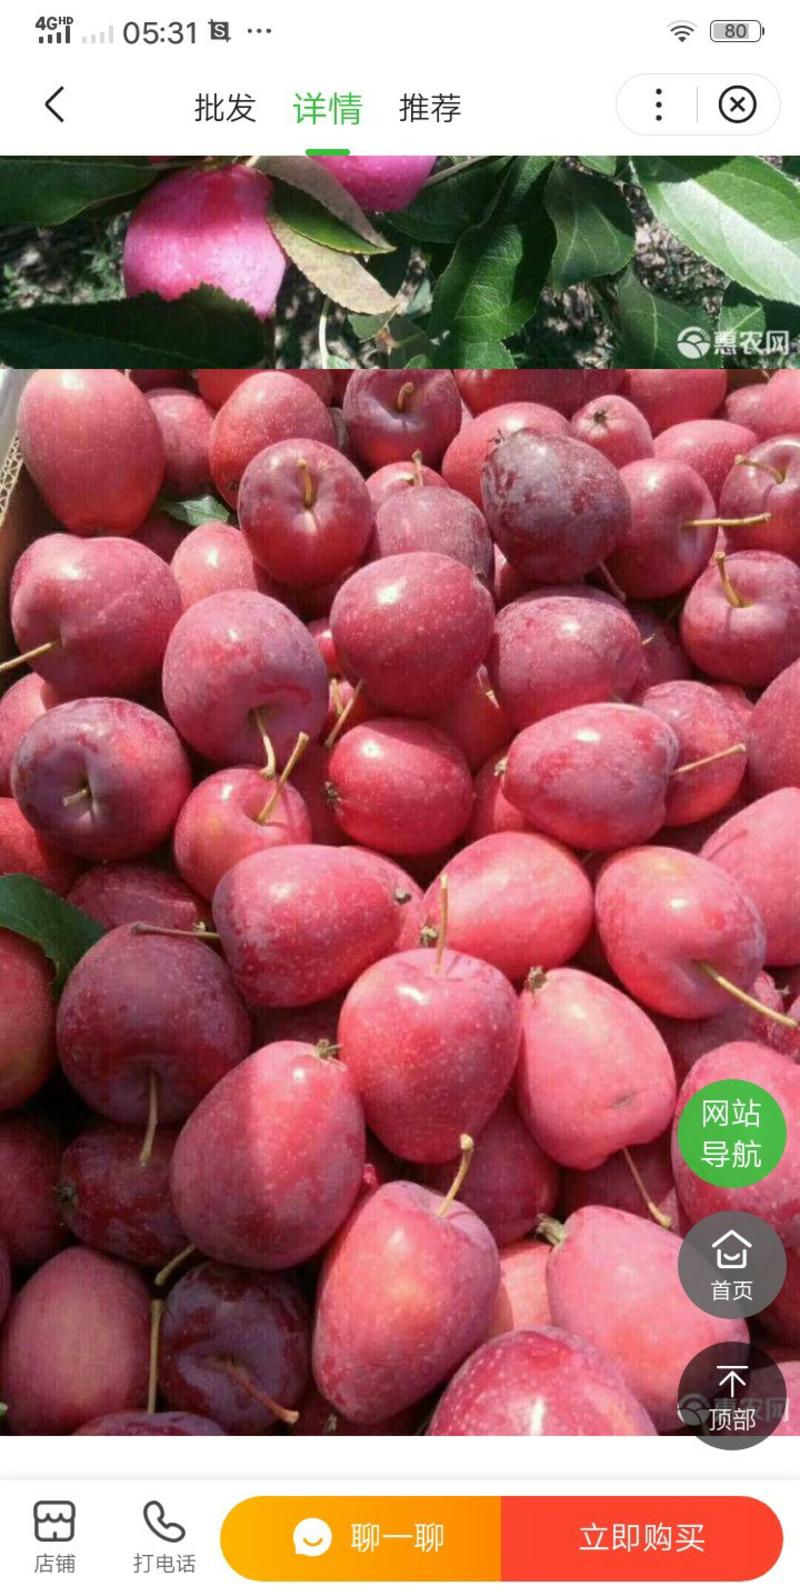 新疆伊犁水果供应:葡萄，西梅，鸡心果，恐龙蛋